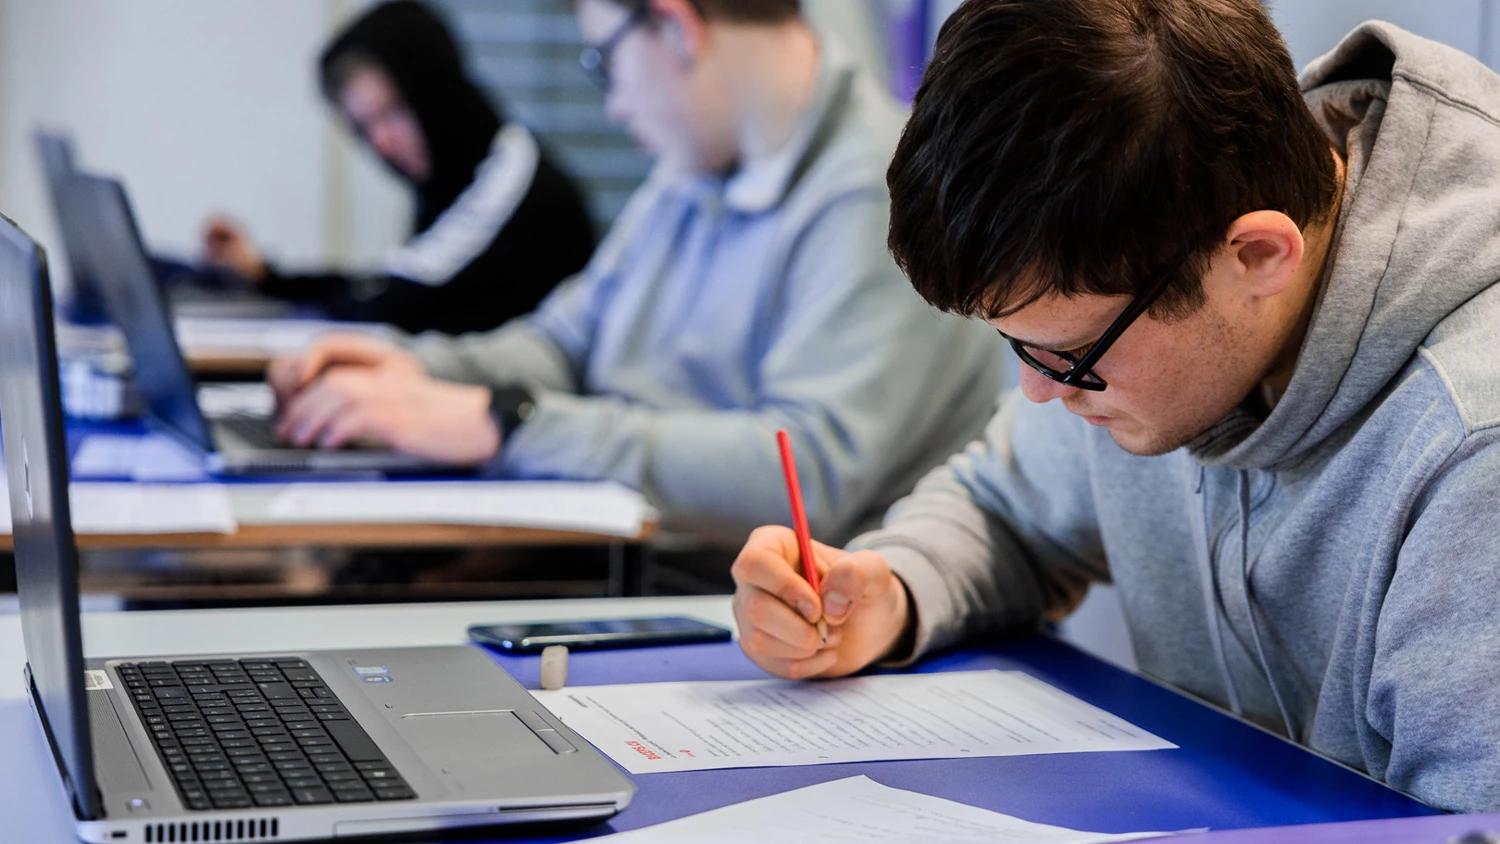 Drei junge Auszubildende lernen an ihren Computern, einer von ihnen schreibt auf ein Blatt.